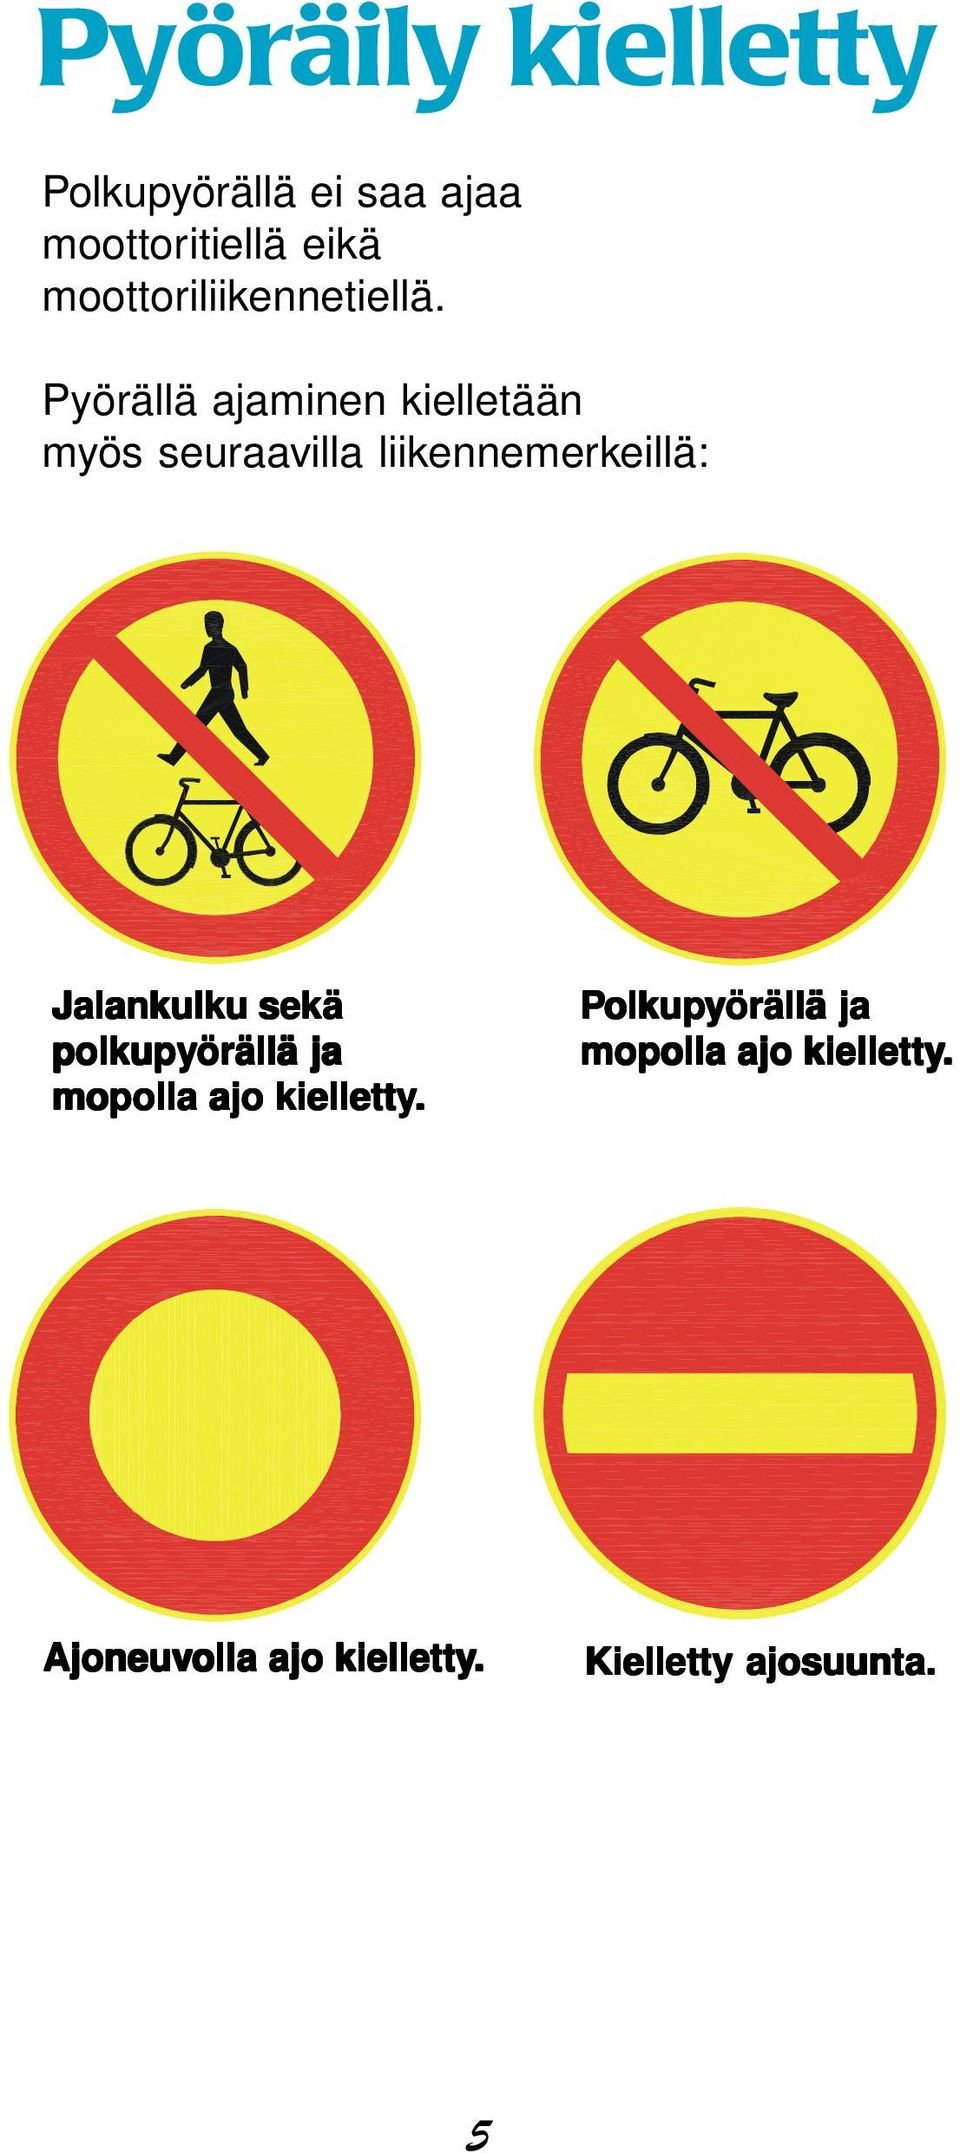 Pyörällä ajaminen kielletään myös seuraavilla liikennemerkeillä: Jalankulku